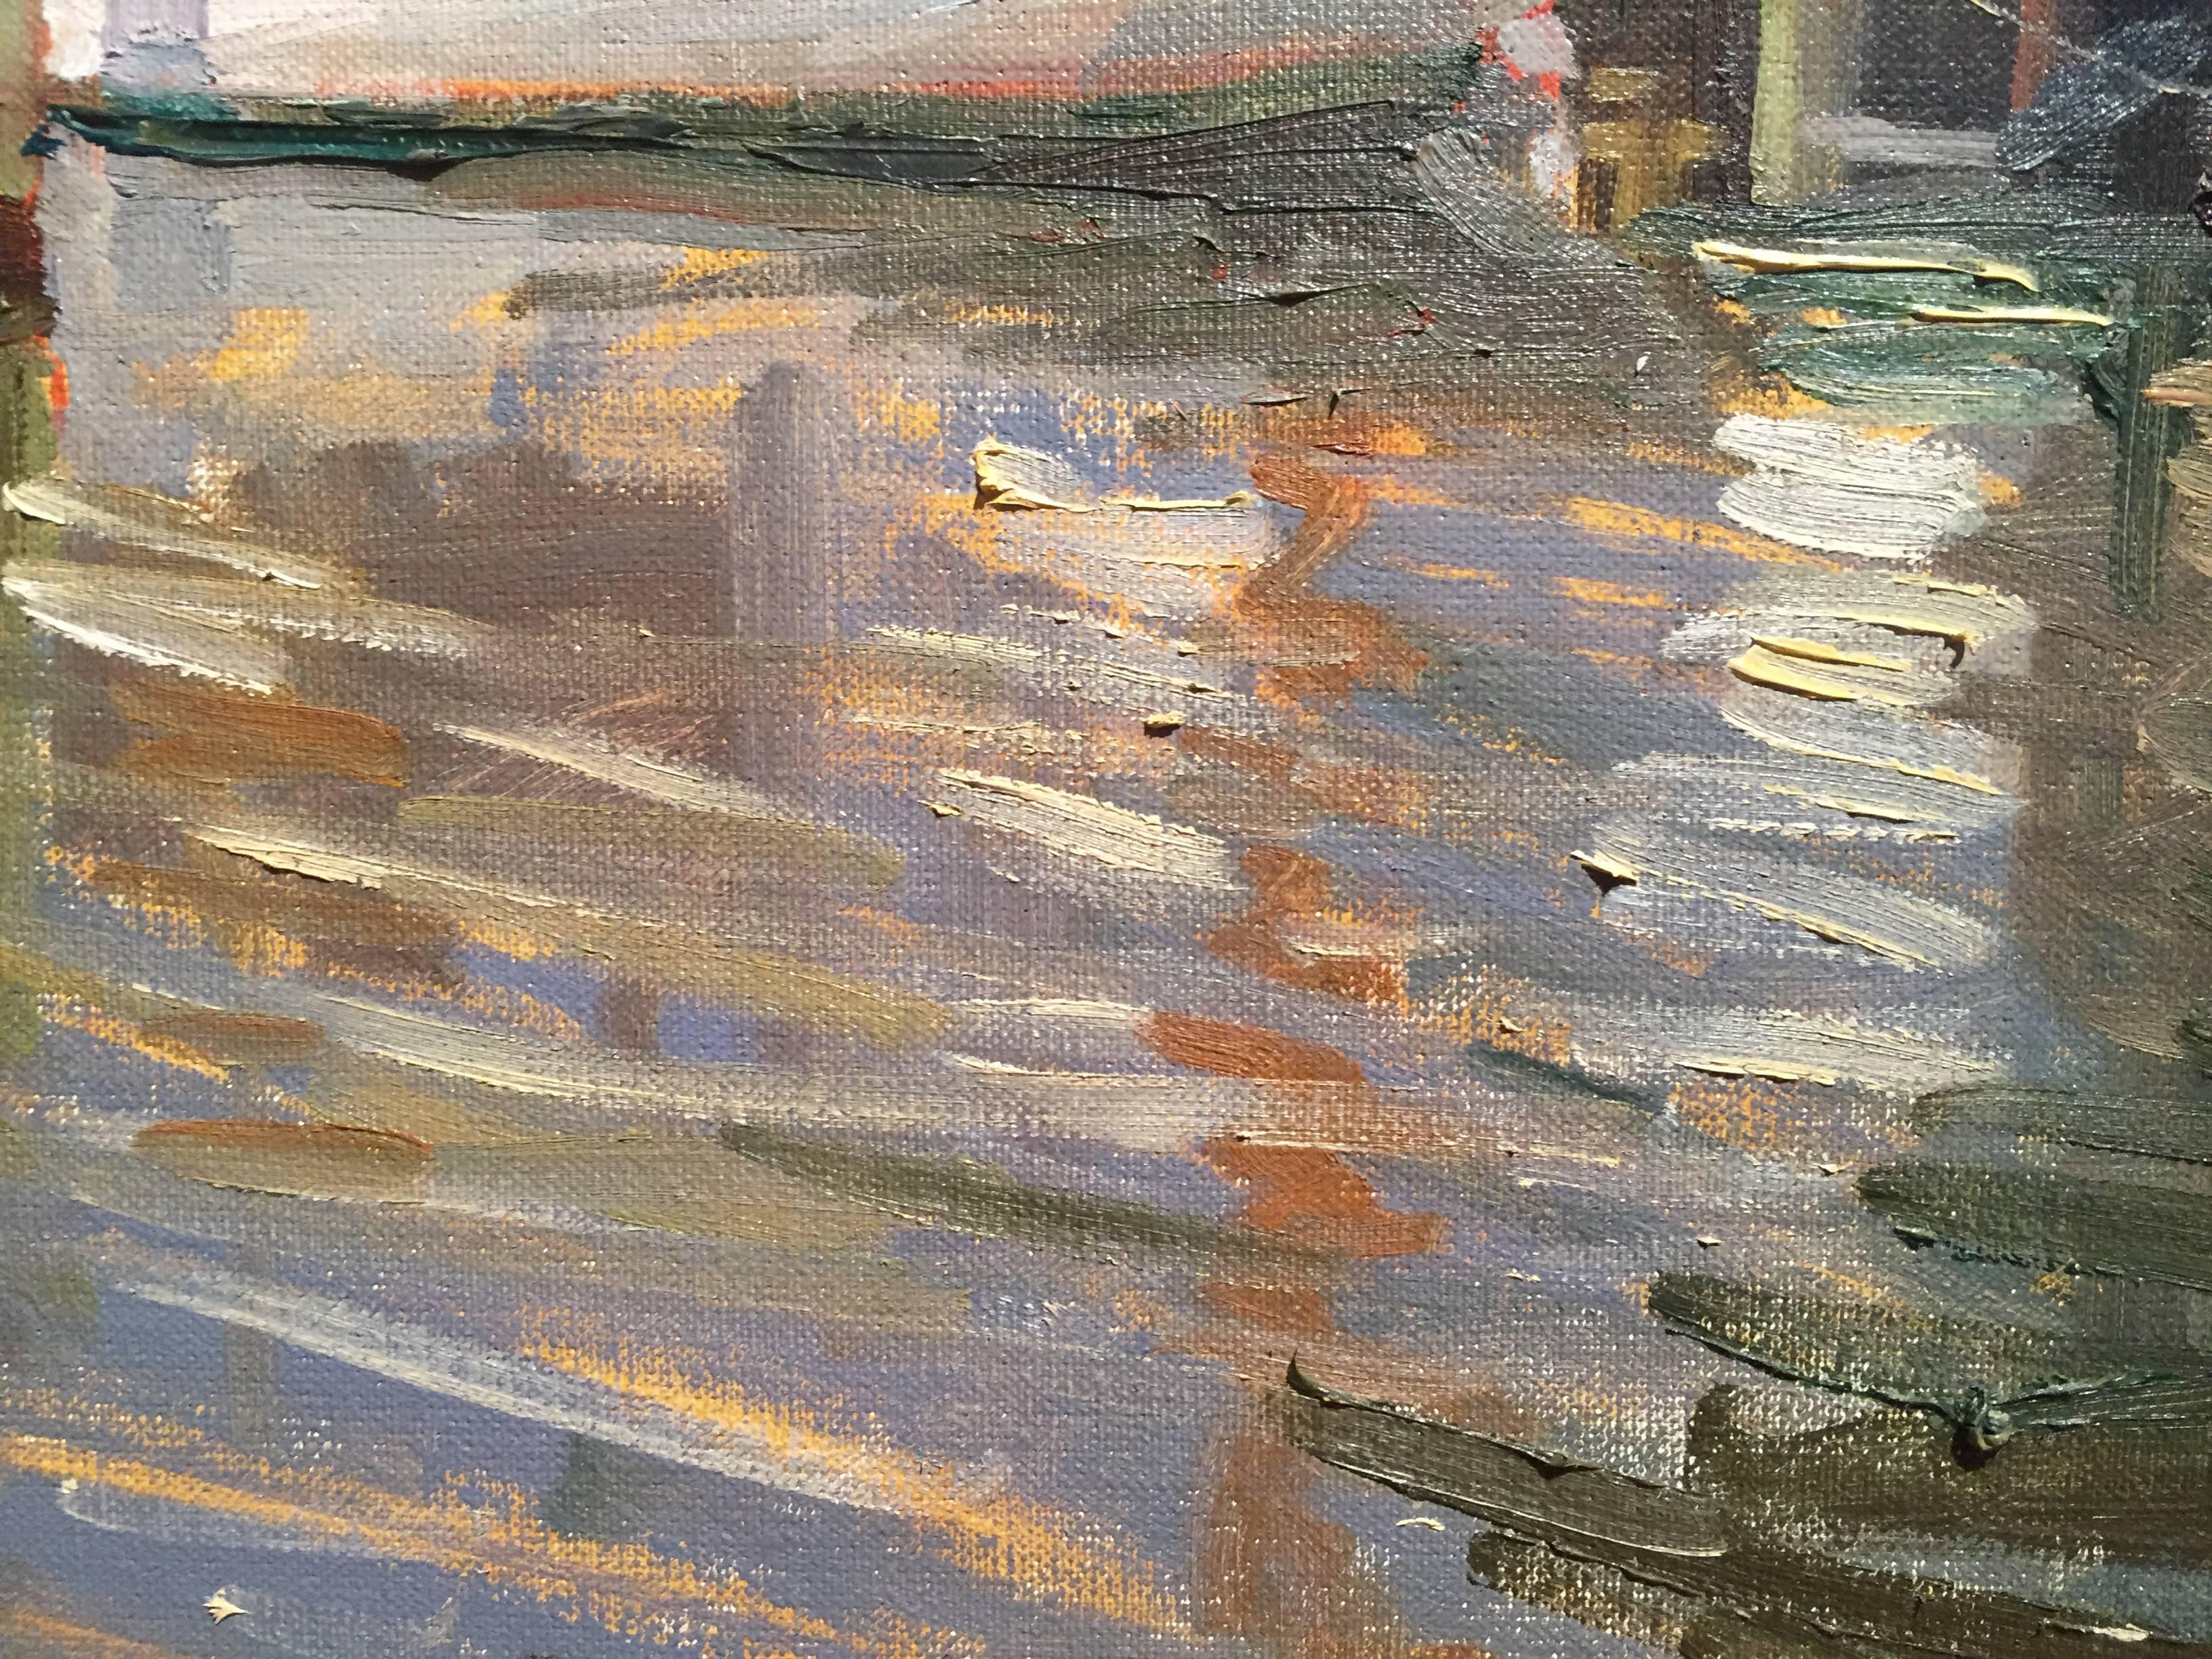 Koh Nee Noh at Dock Sketch wurde en plein-air in Greenport Harbor, NY, gemalt. Eine bunte Mischung von Farben in horizontalen Linien bildet die reflektierende Wasseroberfläche. Ein Segelboot liegt vertäut an einem Steg, die Segel sind gesenkt.